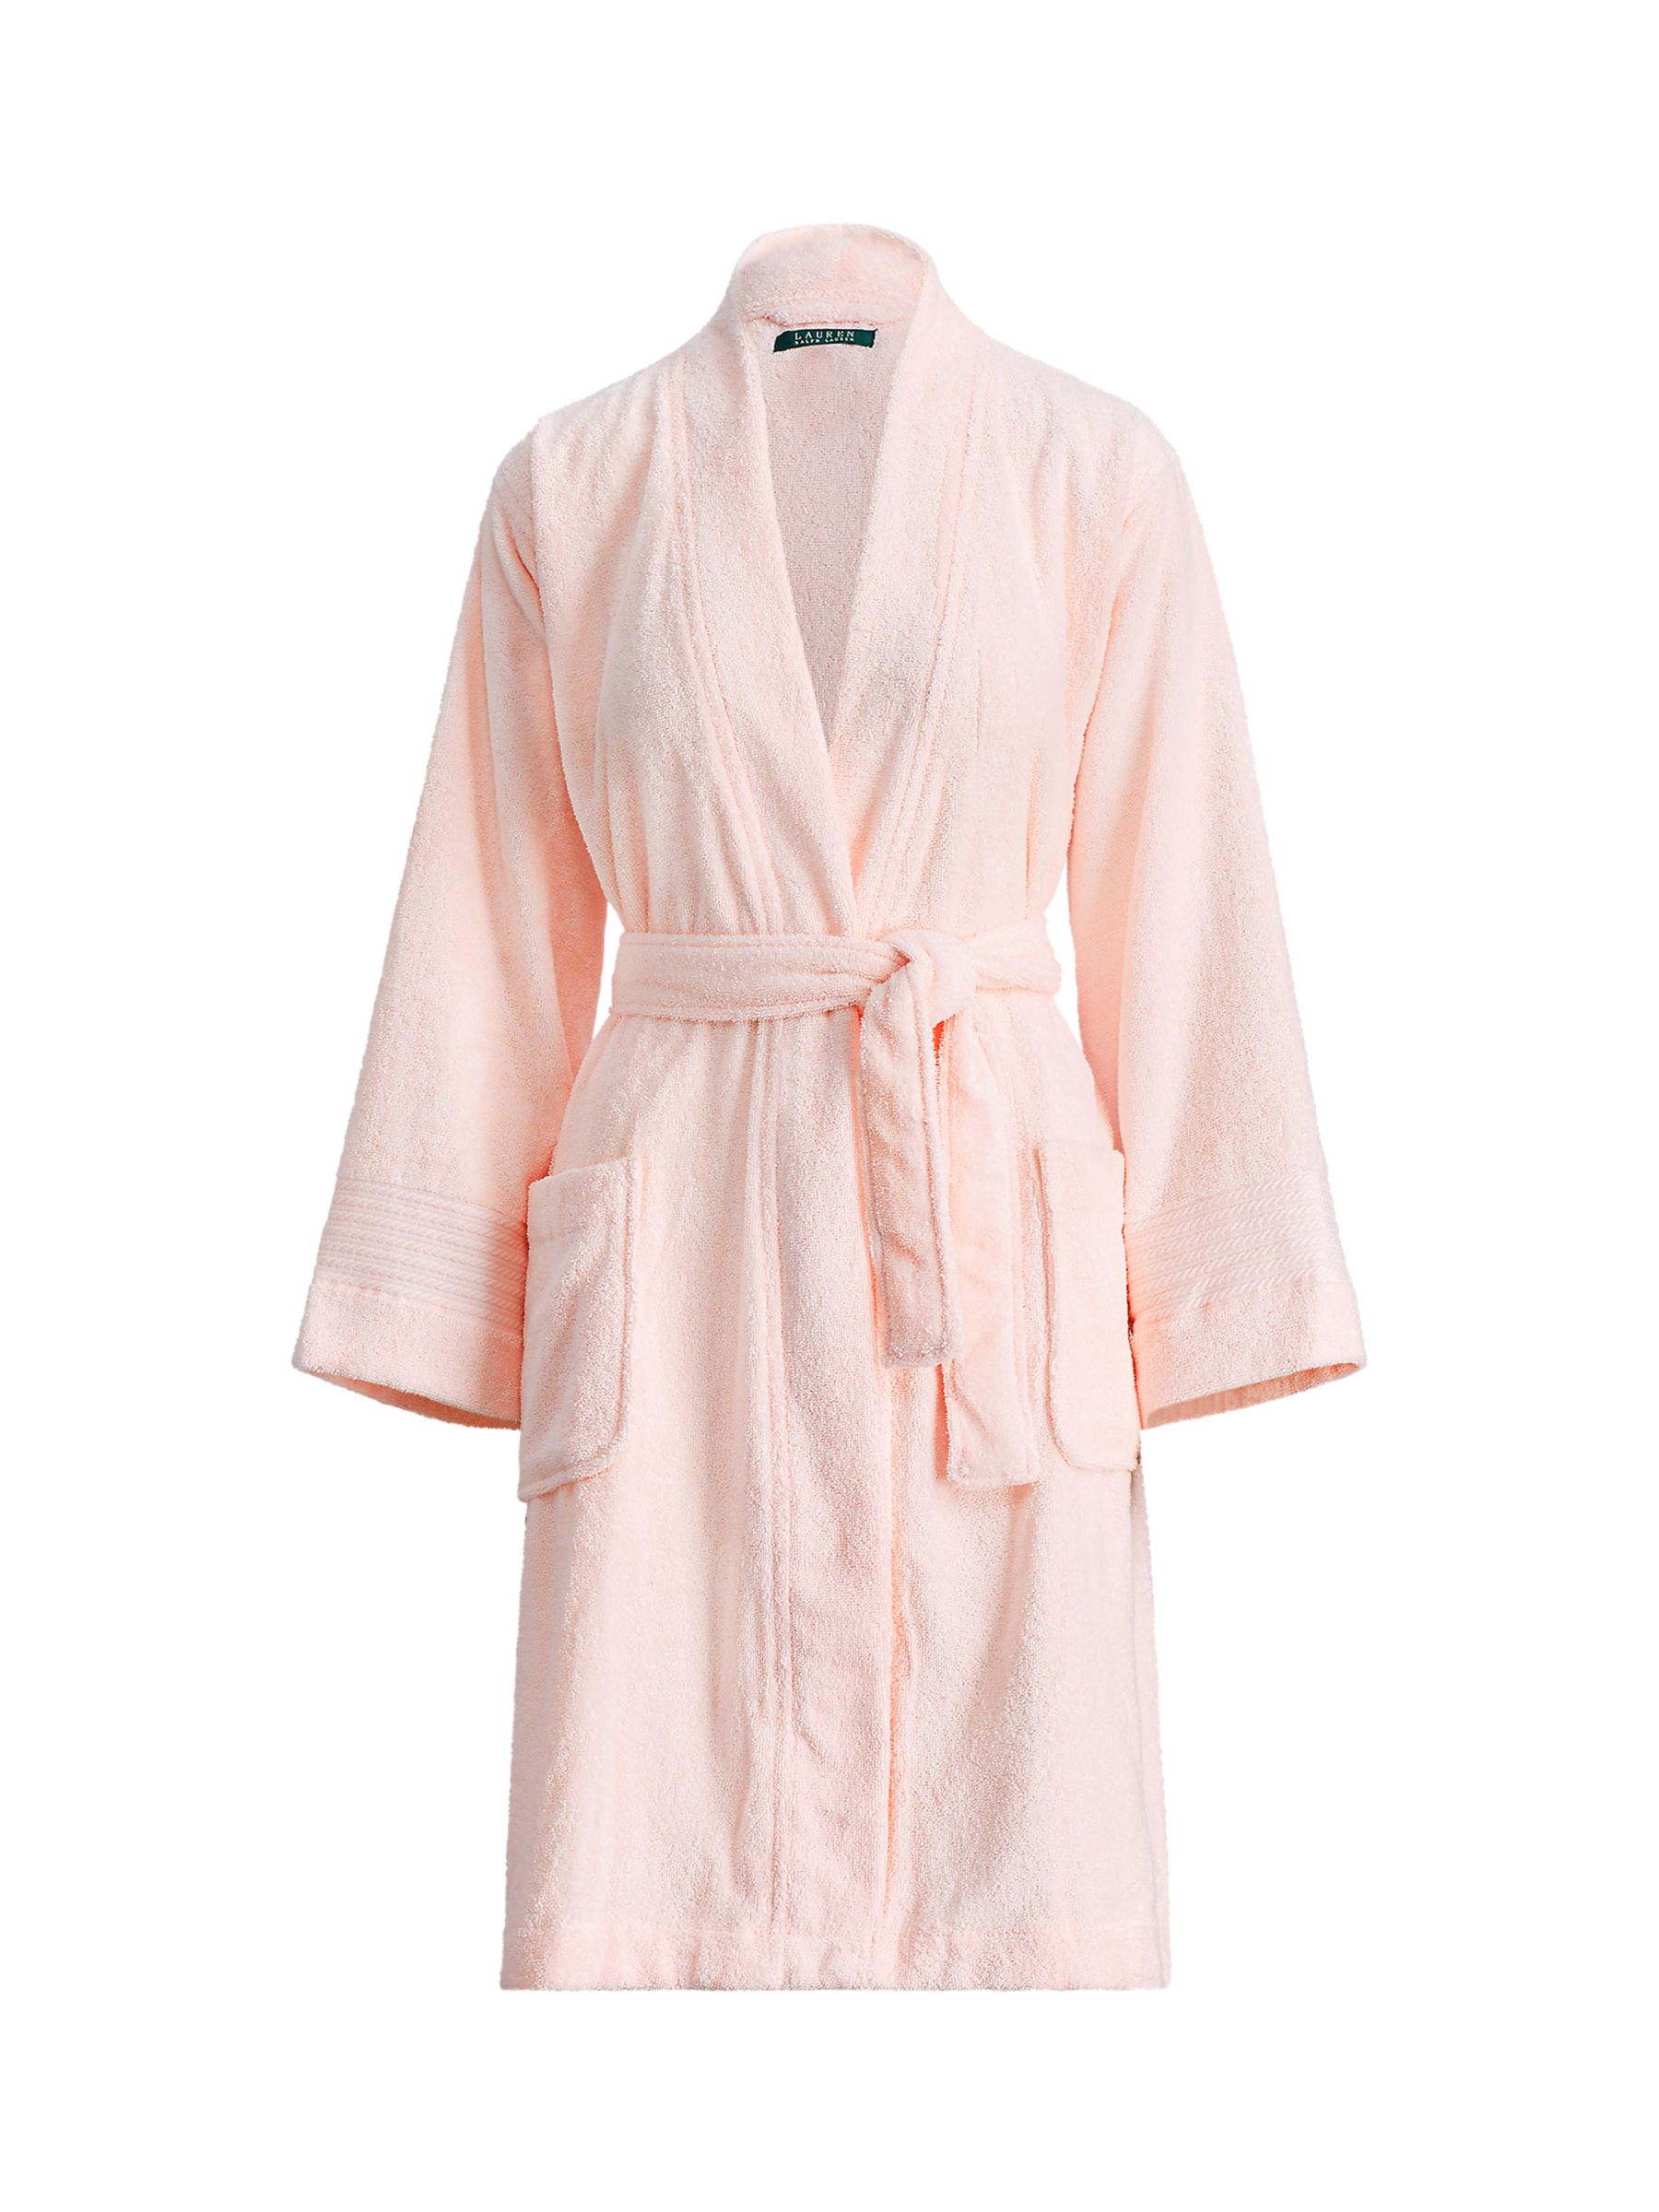 Lauren Ralph Lauren Greenwich Towelling Robe, Pink at John Lewis & Partners